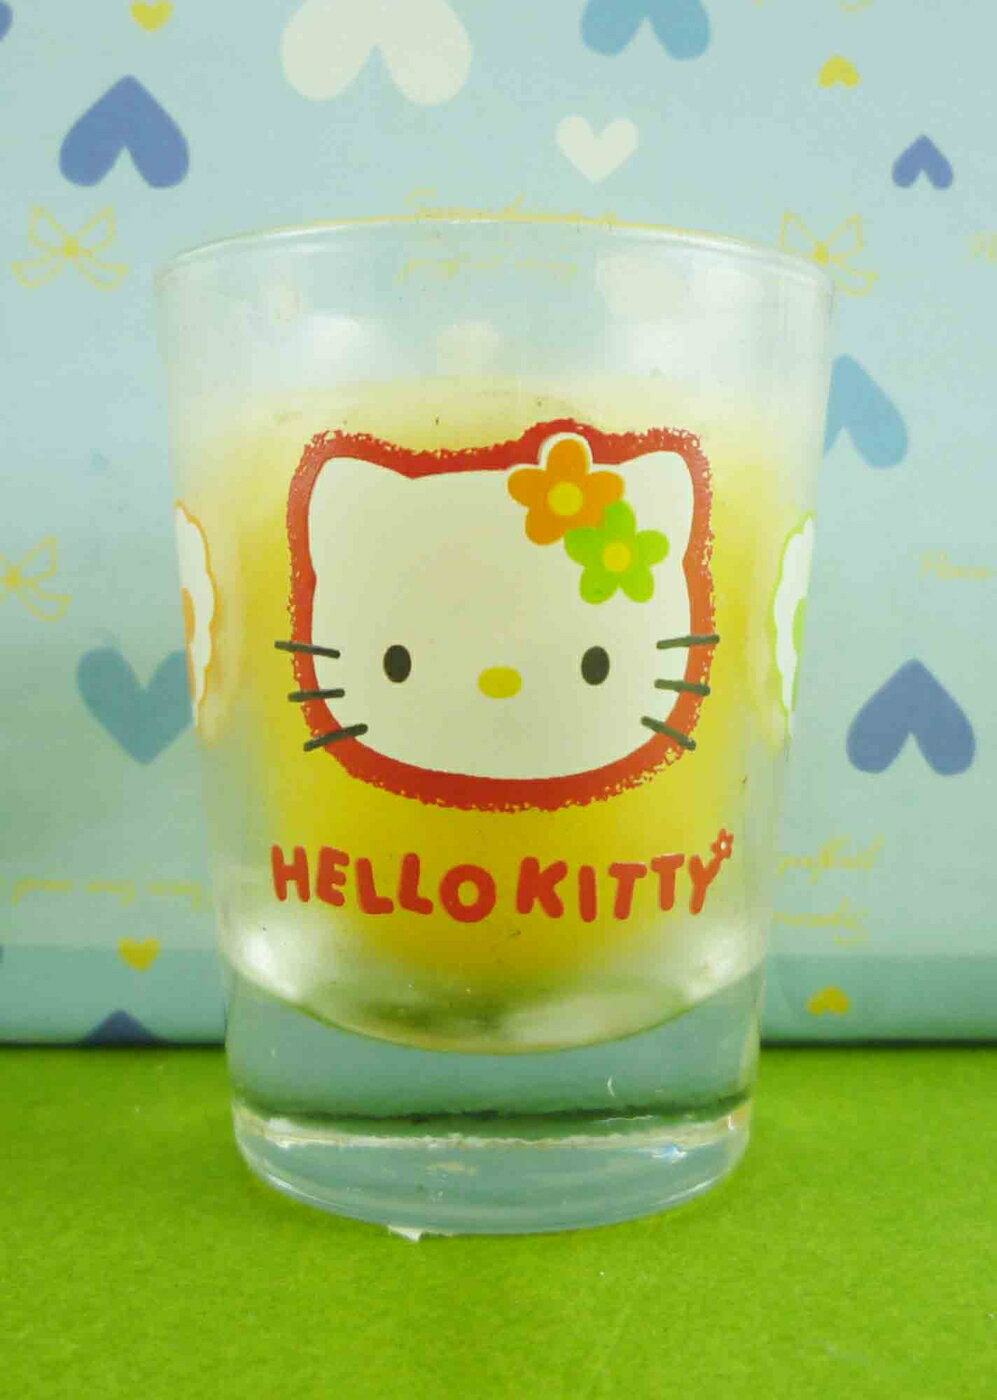 【震撼精品百貨】Hello Kitty 凱蒂貓 蠟燭 黃【共1款】 震撼日式精品百貨